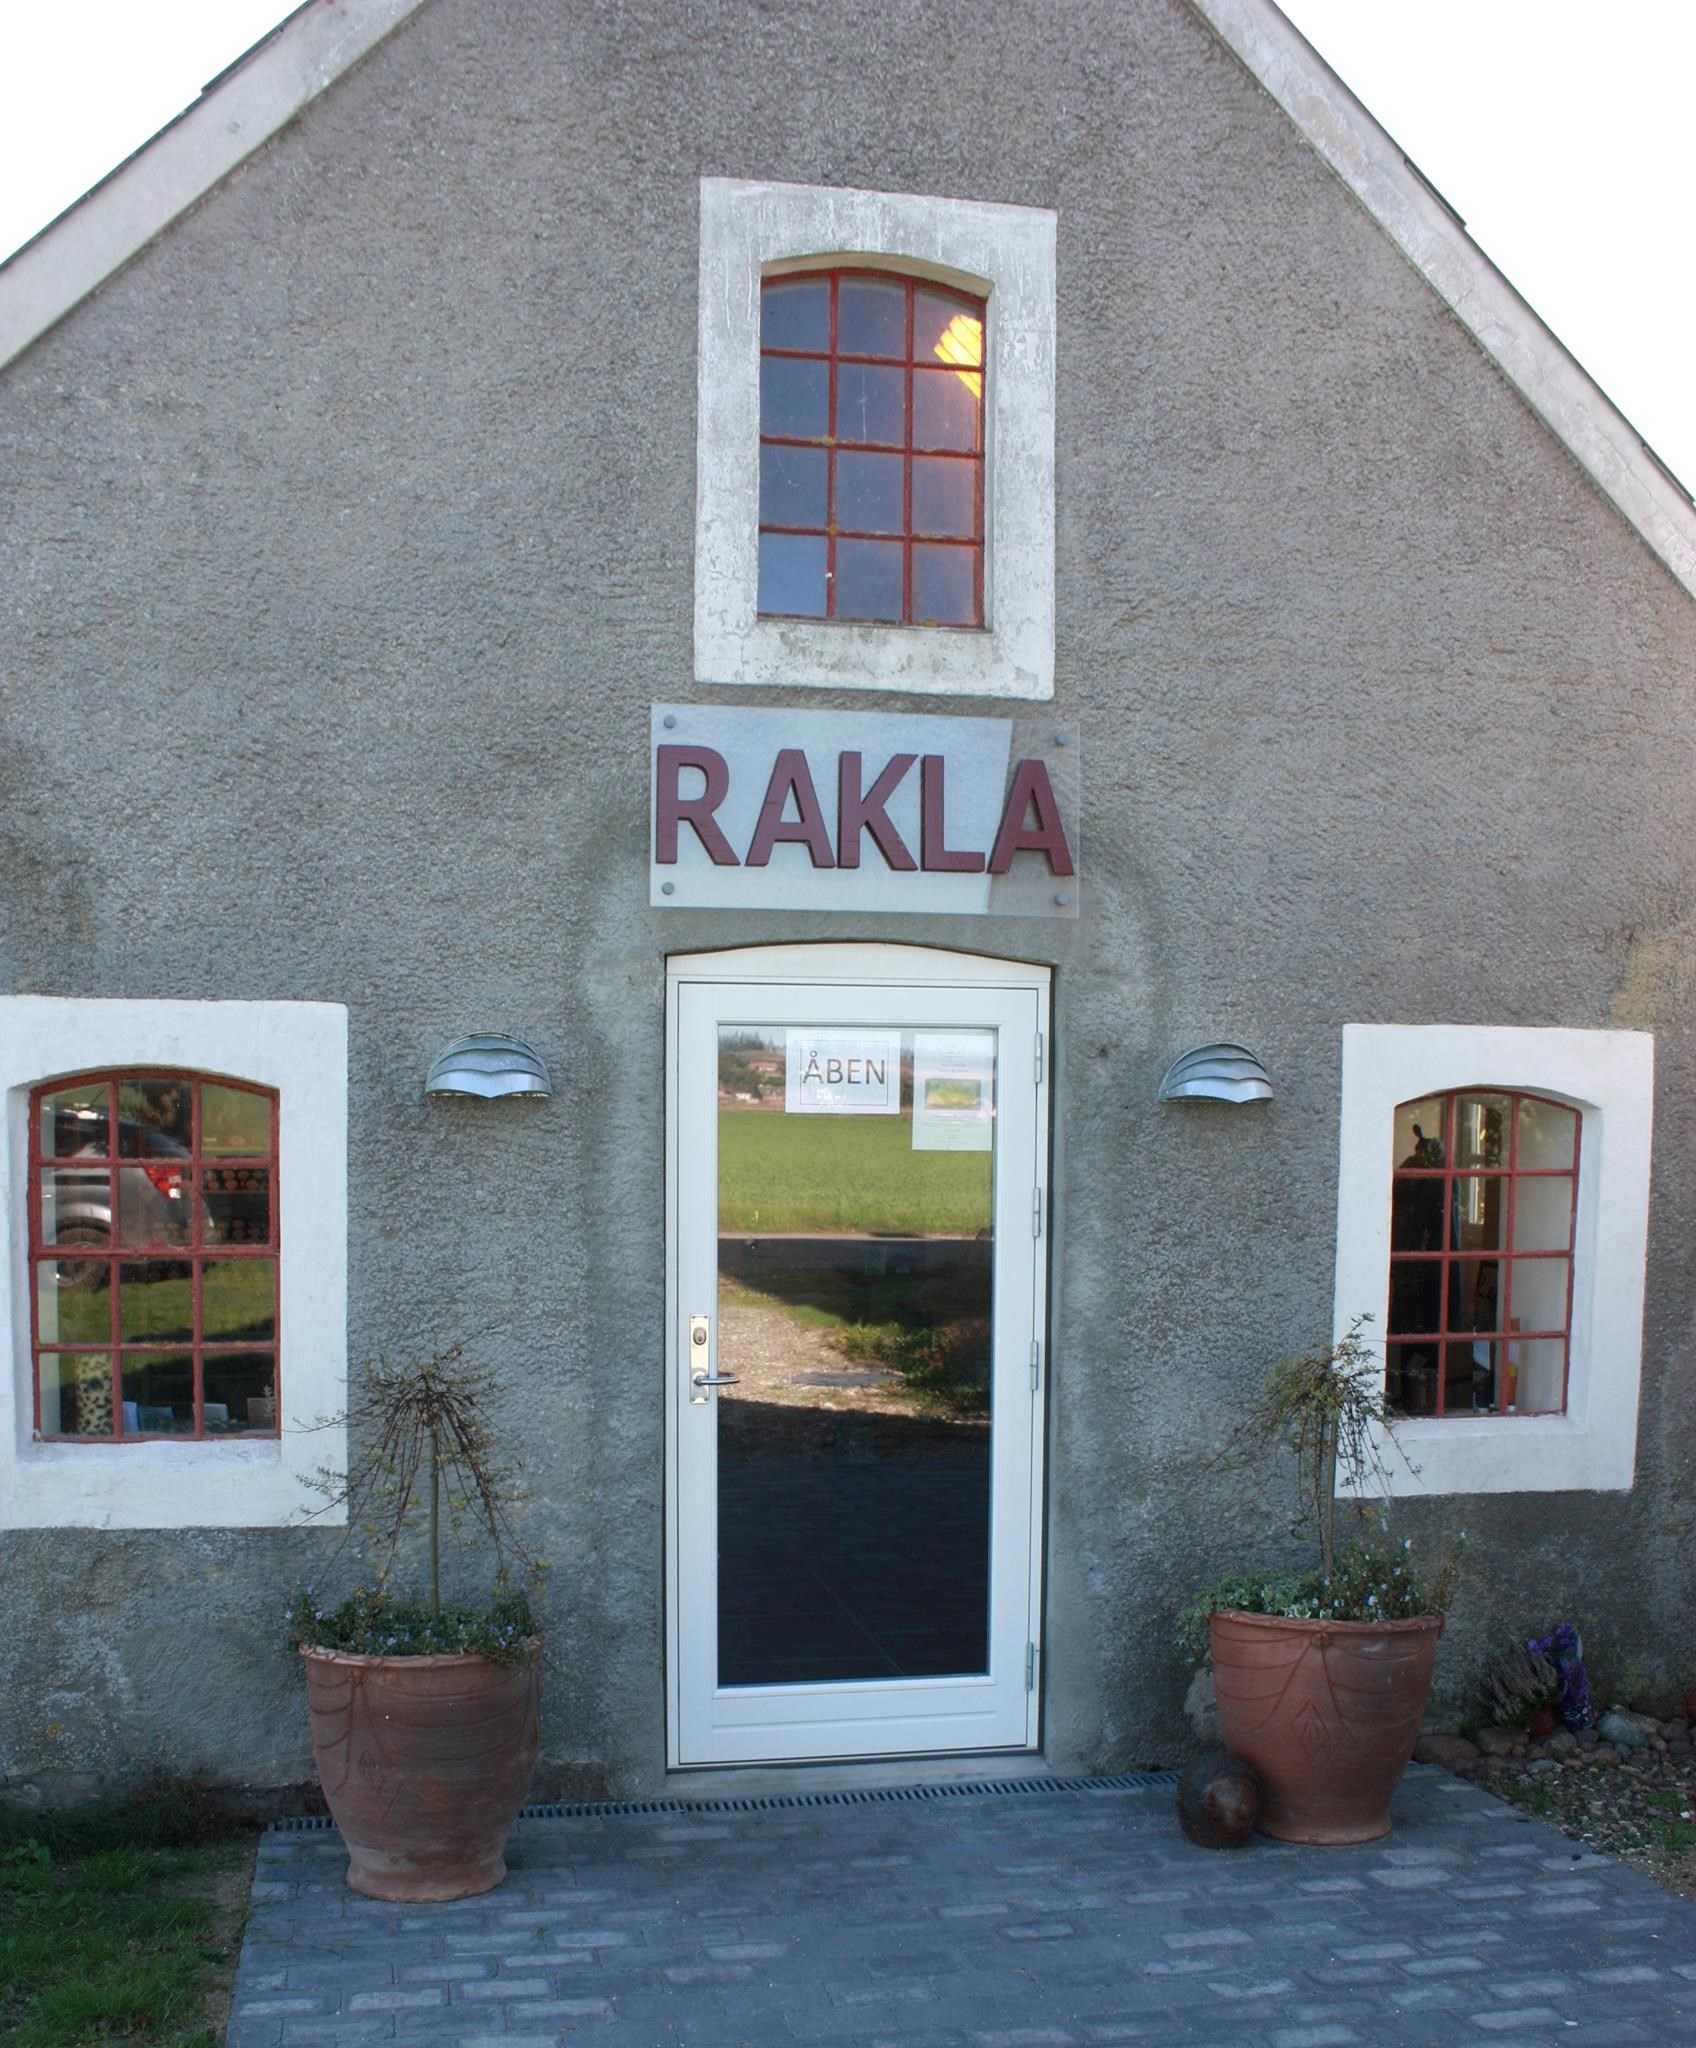 Billede af indgang til Rakla. Foto: RAKLA.